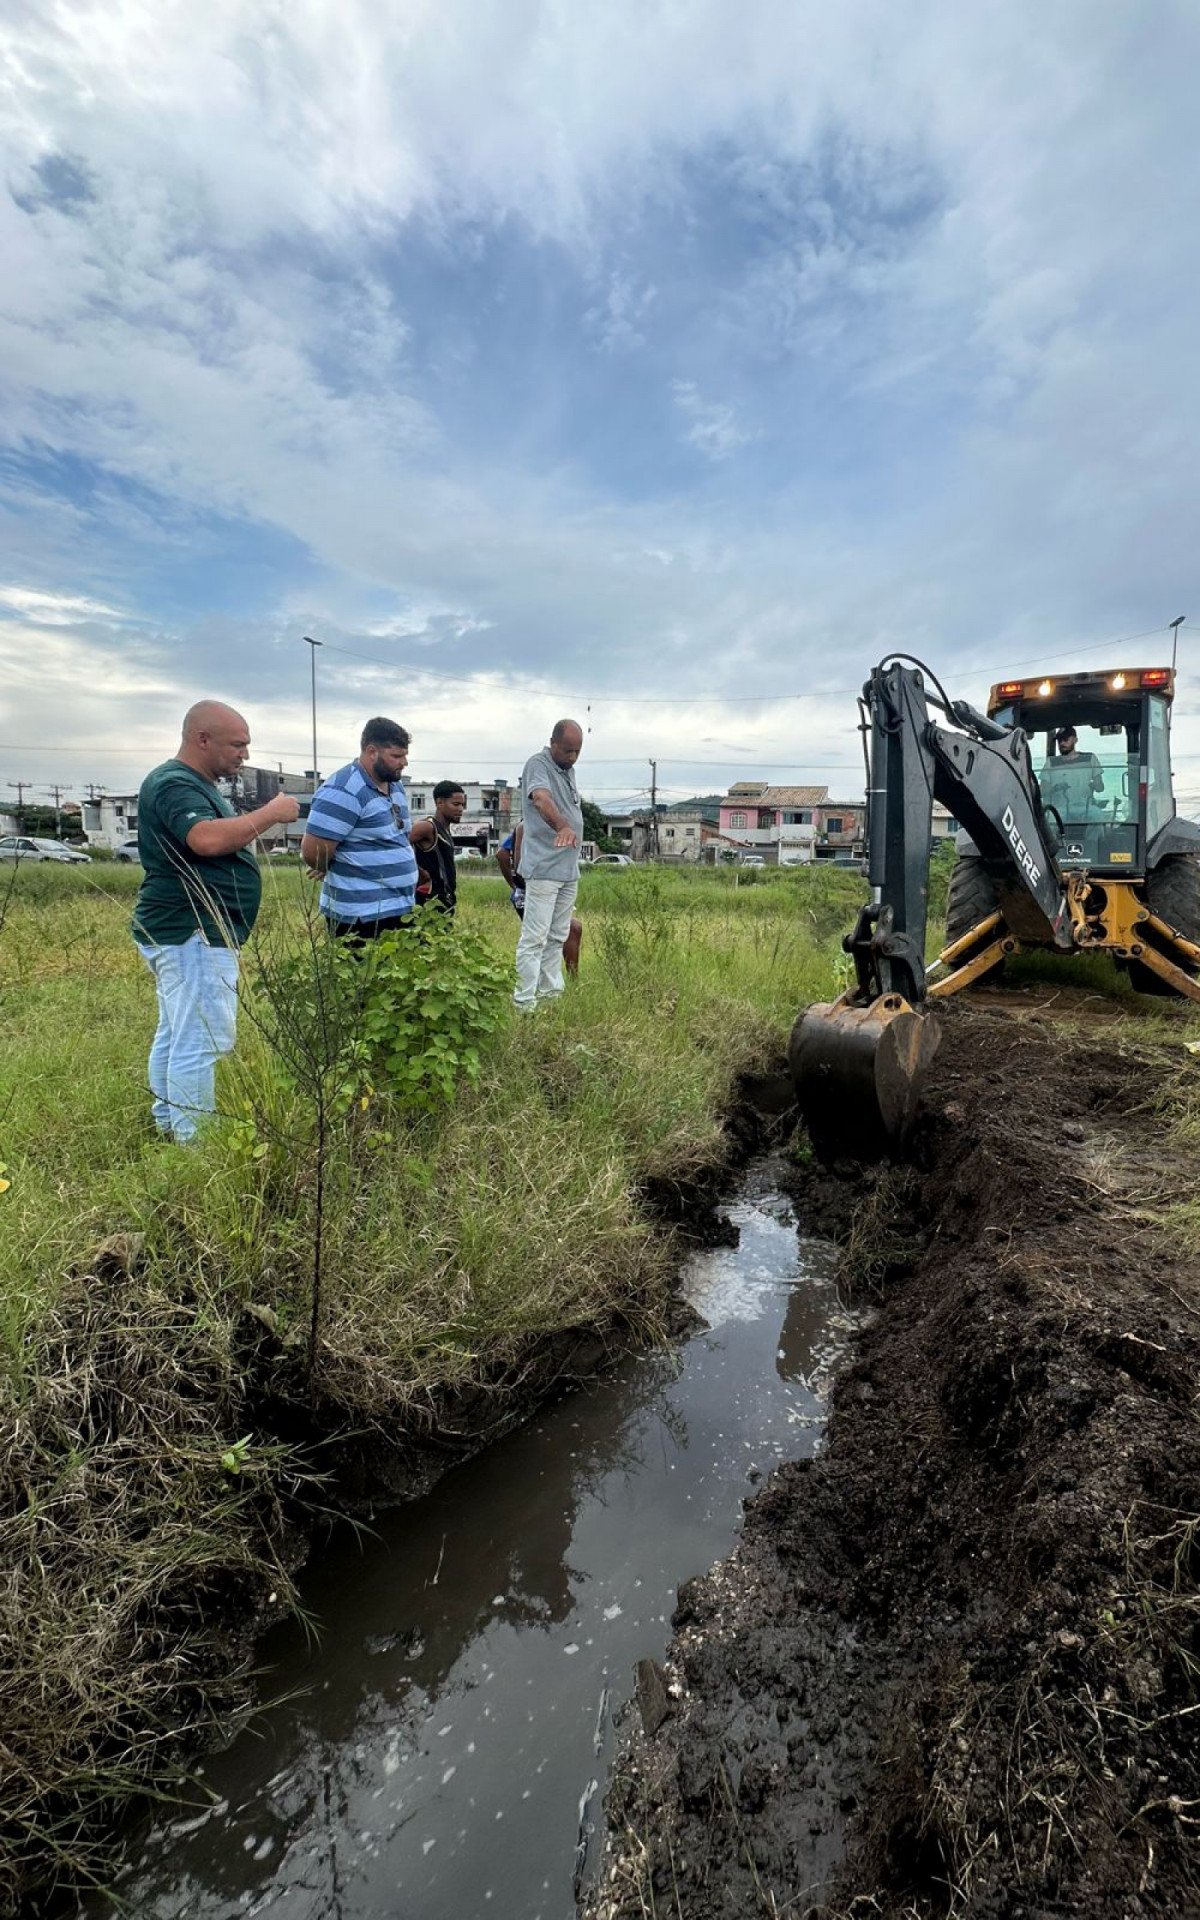 Serviços Públicos de São Pedro da Aldeia realiza desobstrução de manilhamento para escoamento de águas pluviais | São Pedro da Aldeia